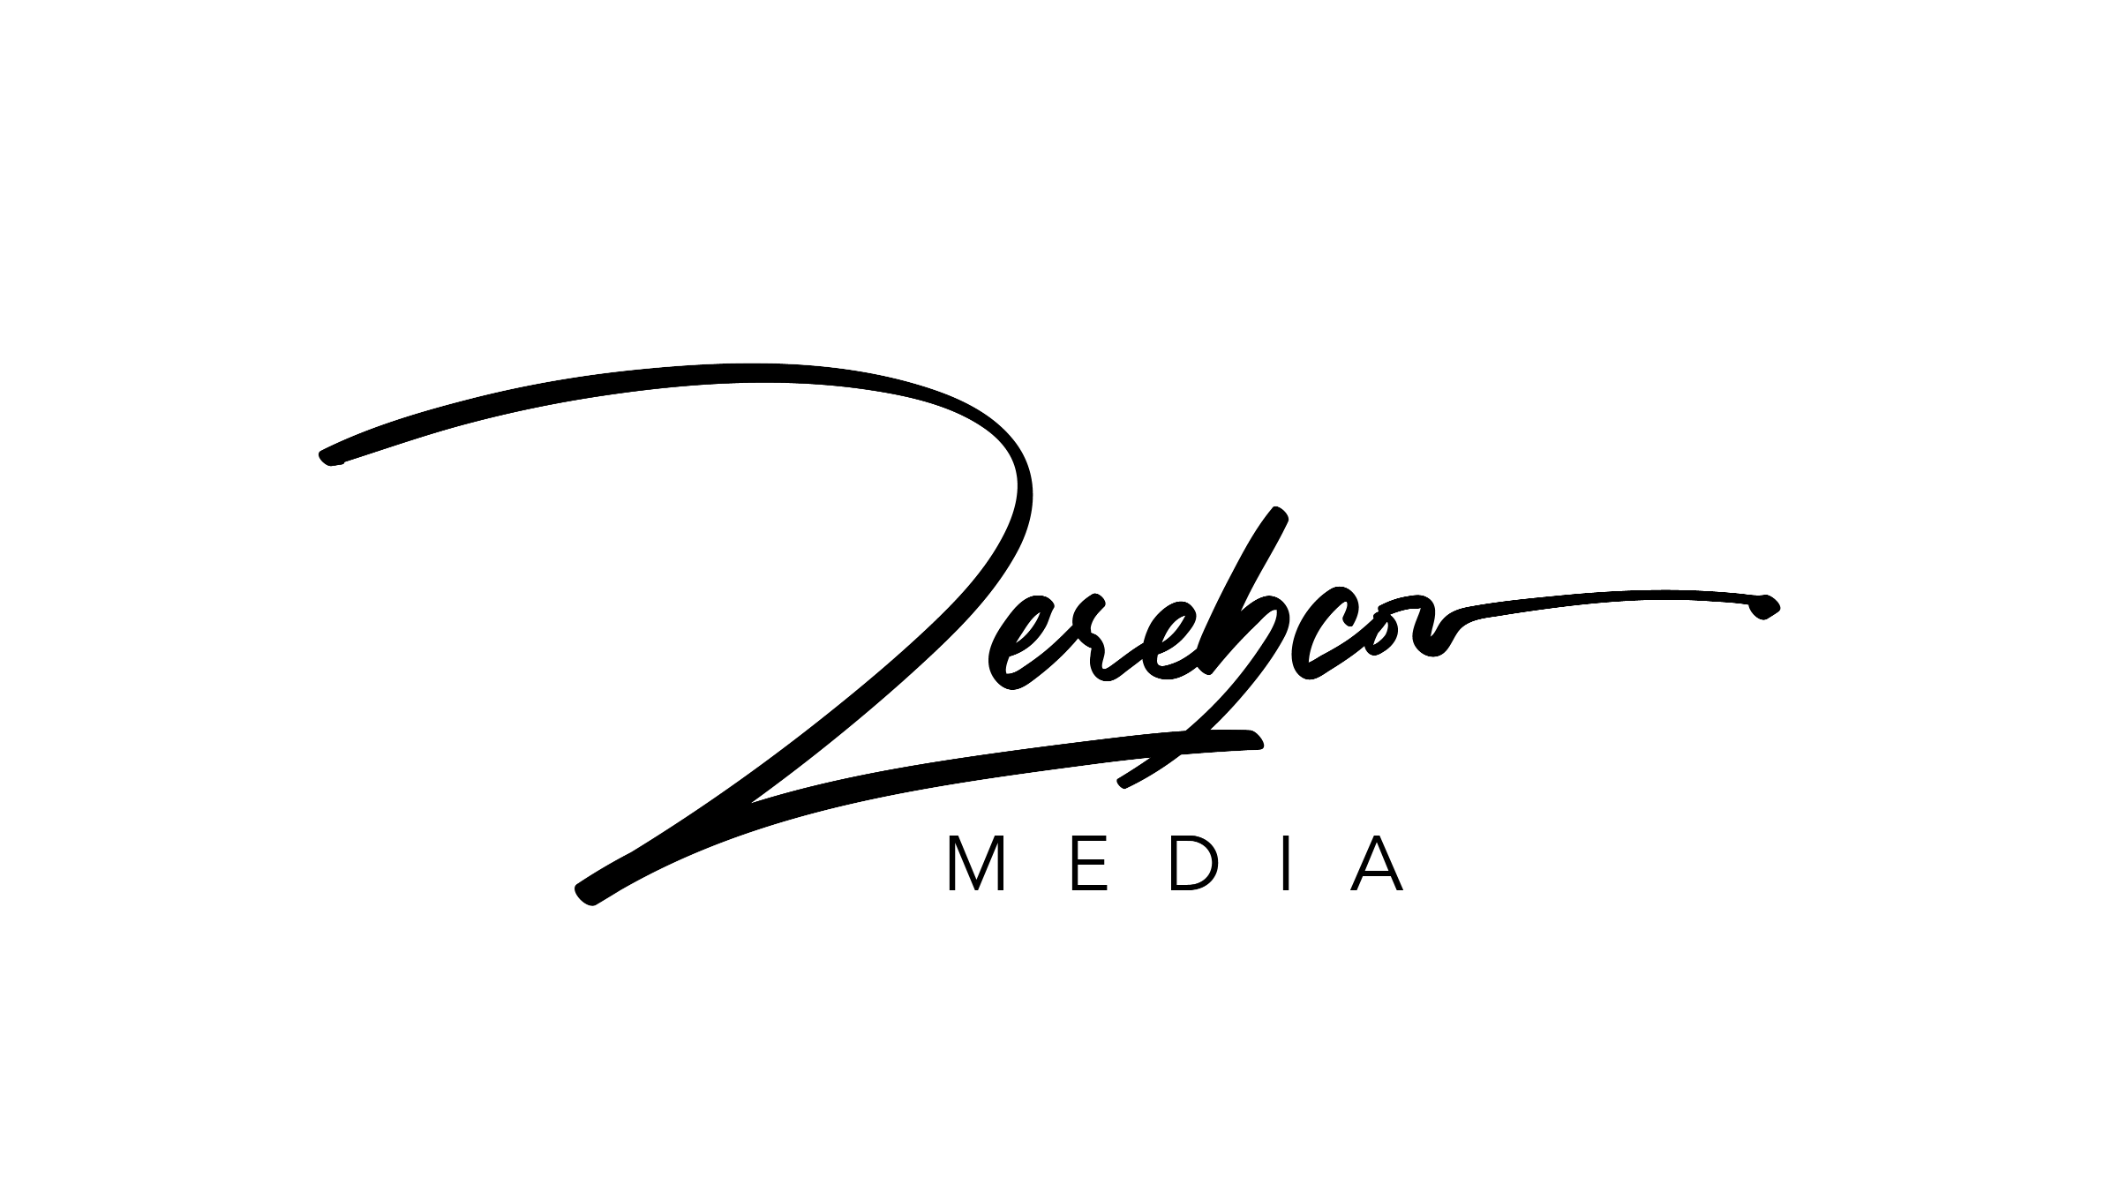 Bilder Zerebcov Media I Professionelle Videoproduktion & Contenterstellung